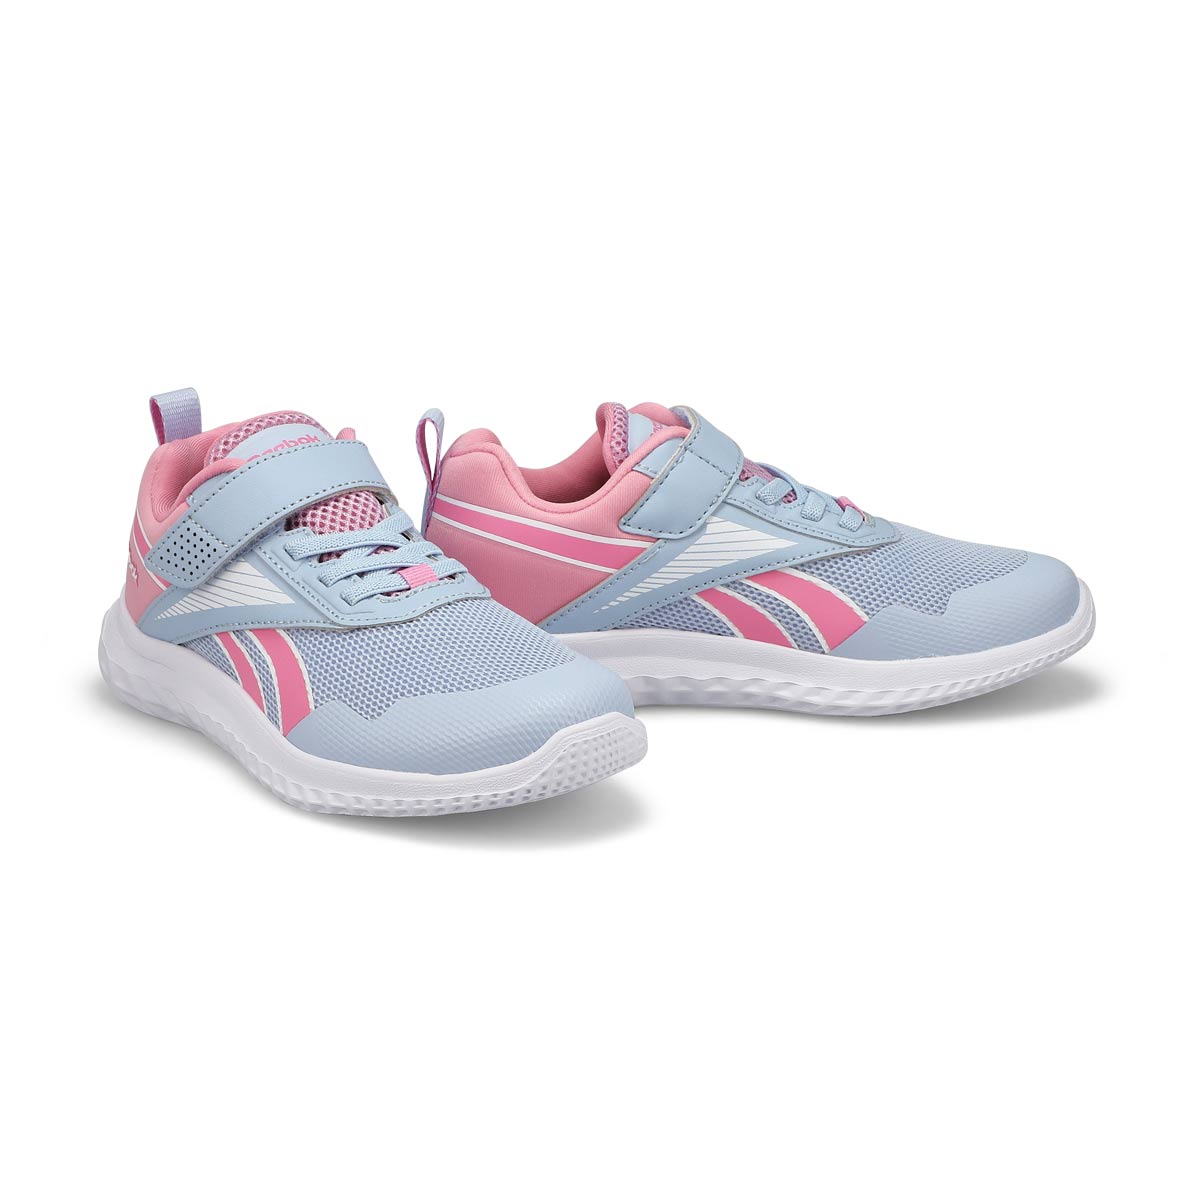 Girls Rush Runner 5 Sneaker - Blue/White/Pink